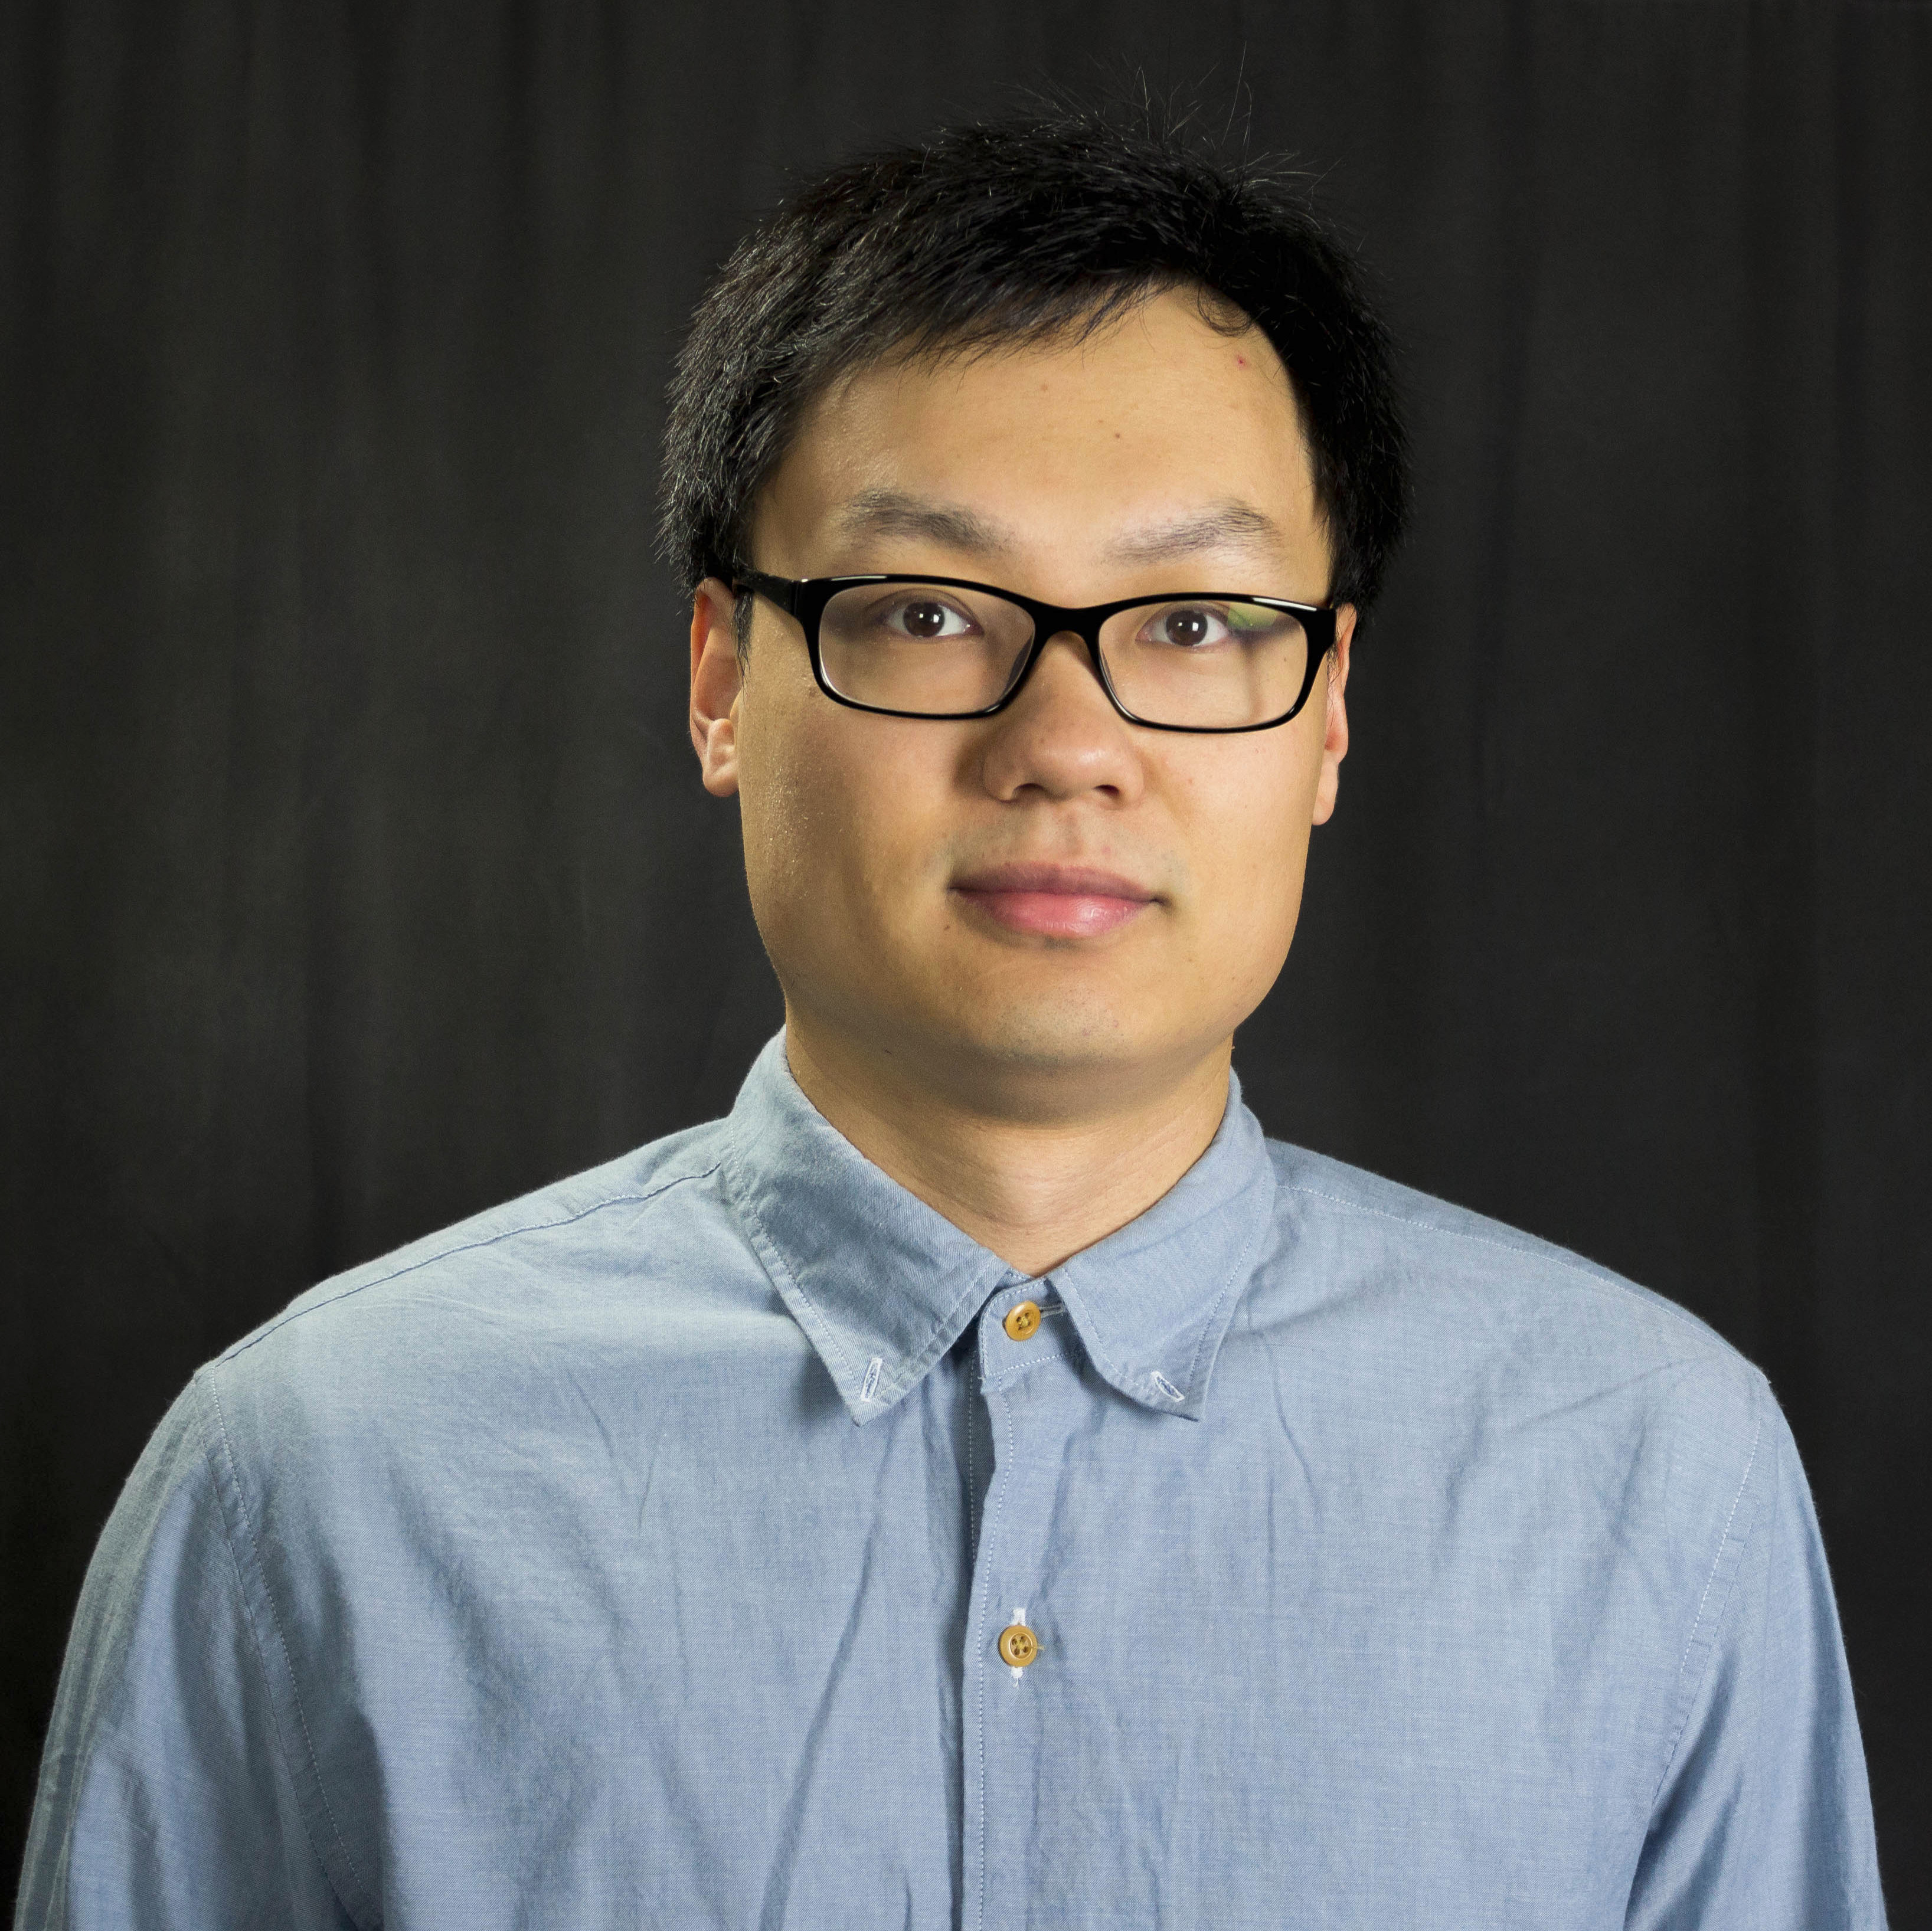 Zhan Zhang, PhD